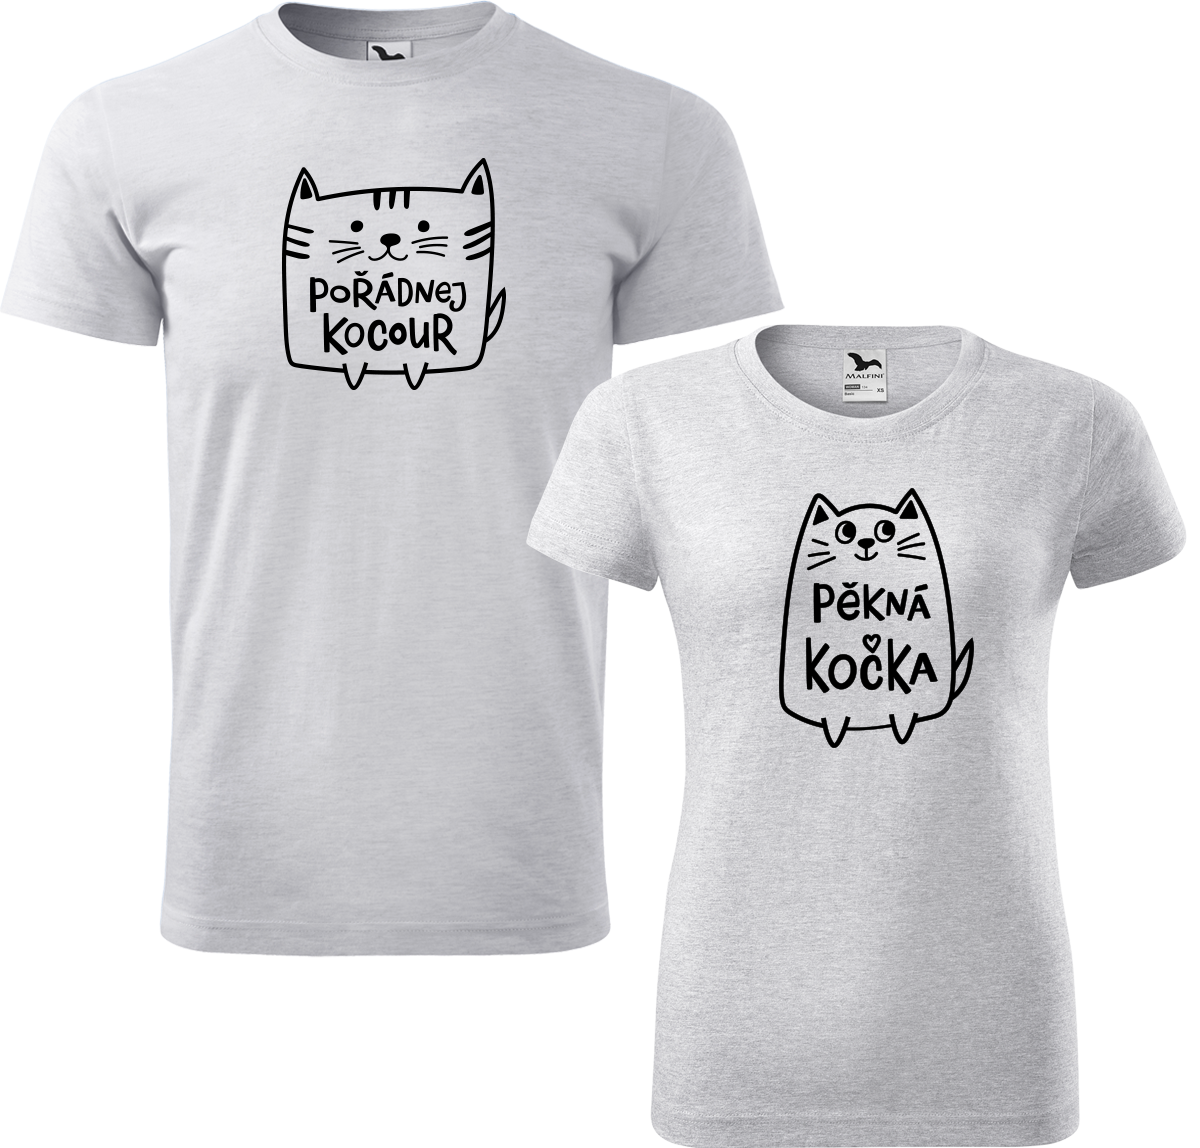 Trička pro páry - Pořádnej kocour a pěkná kočka Barva: Světle šedý melír (03), Velikost dámské tričko: XL, Velikost pánské tričko: XL